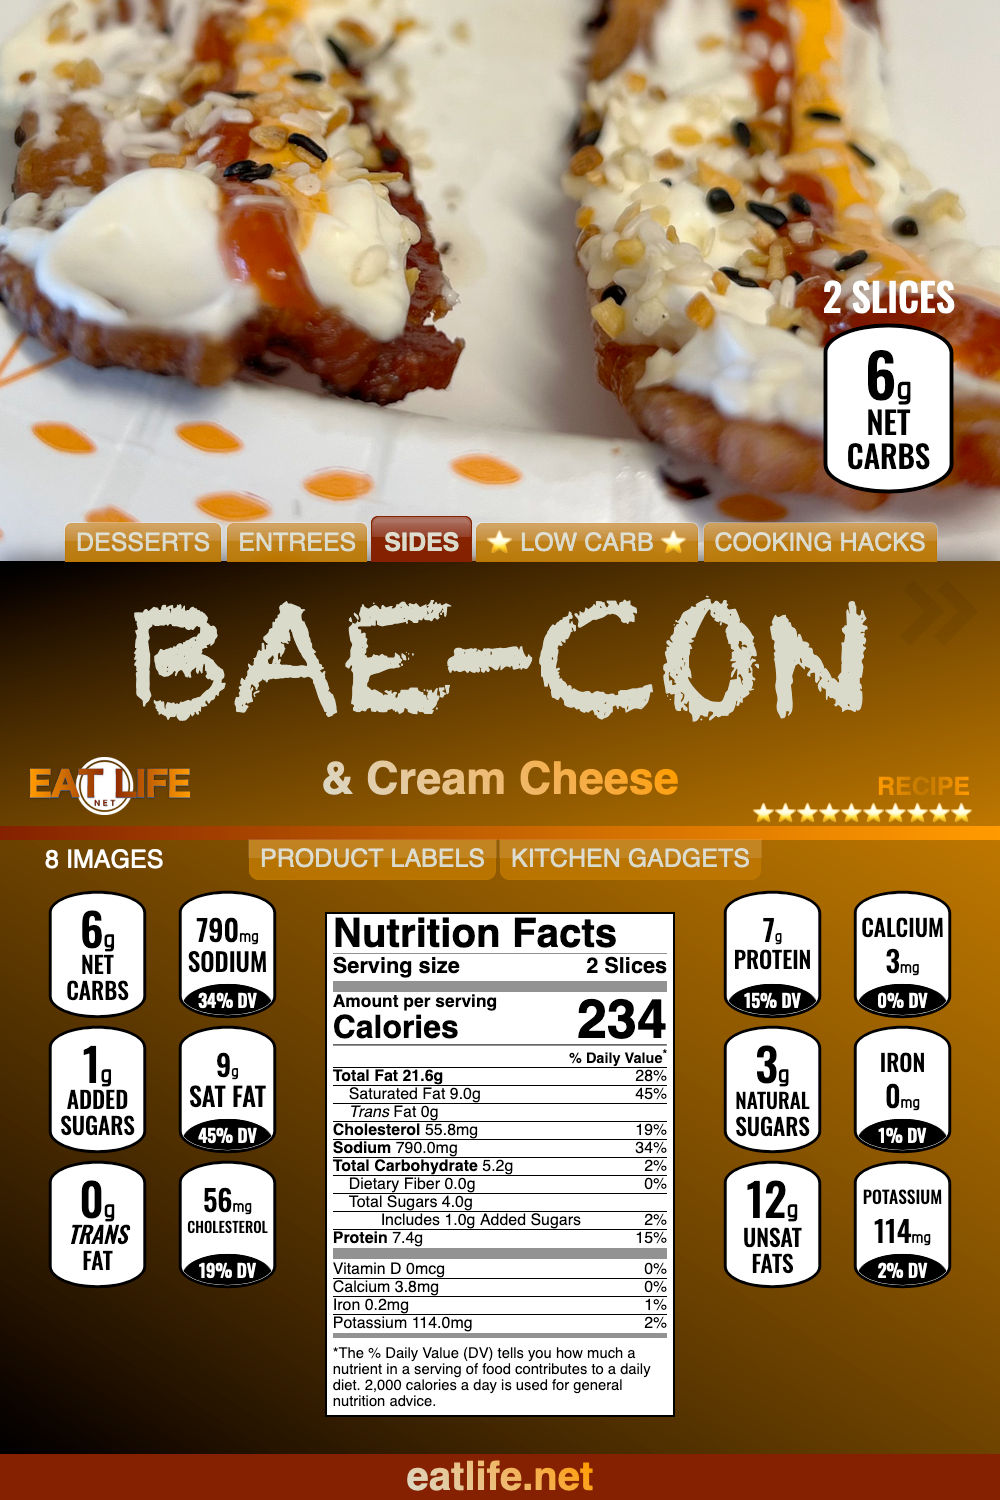 BAE-con and Cream Cheese